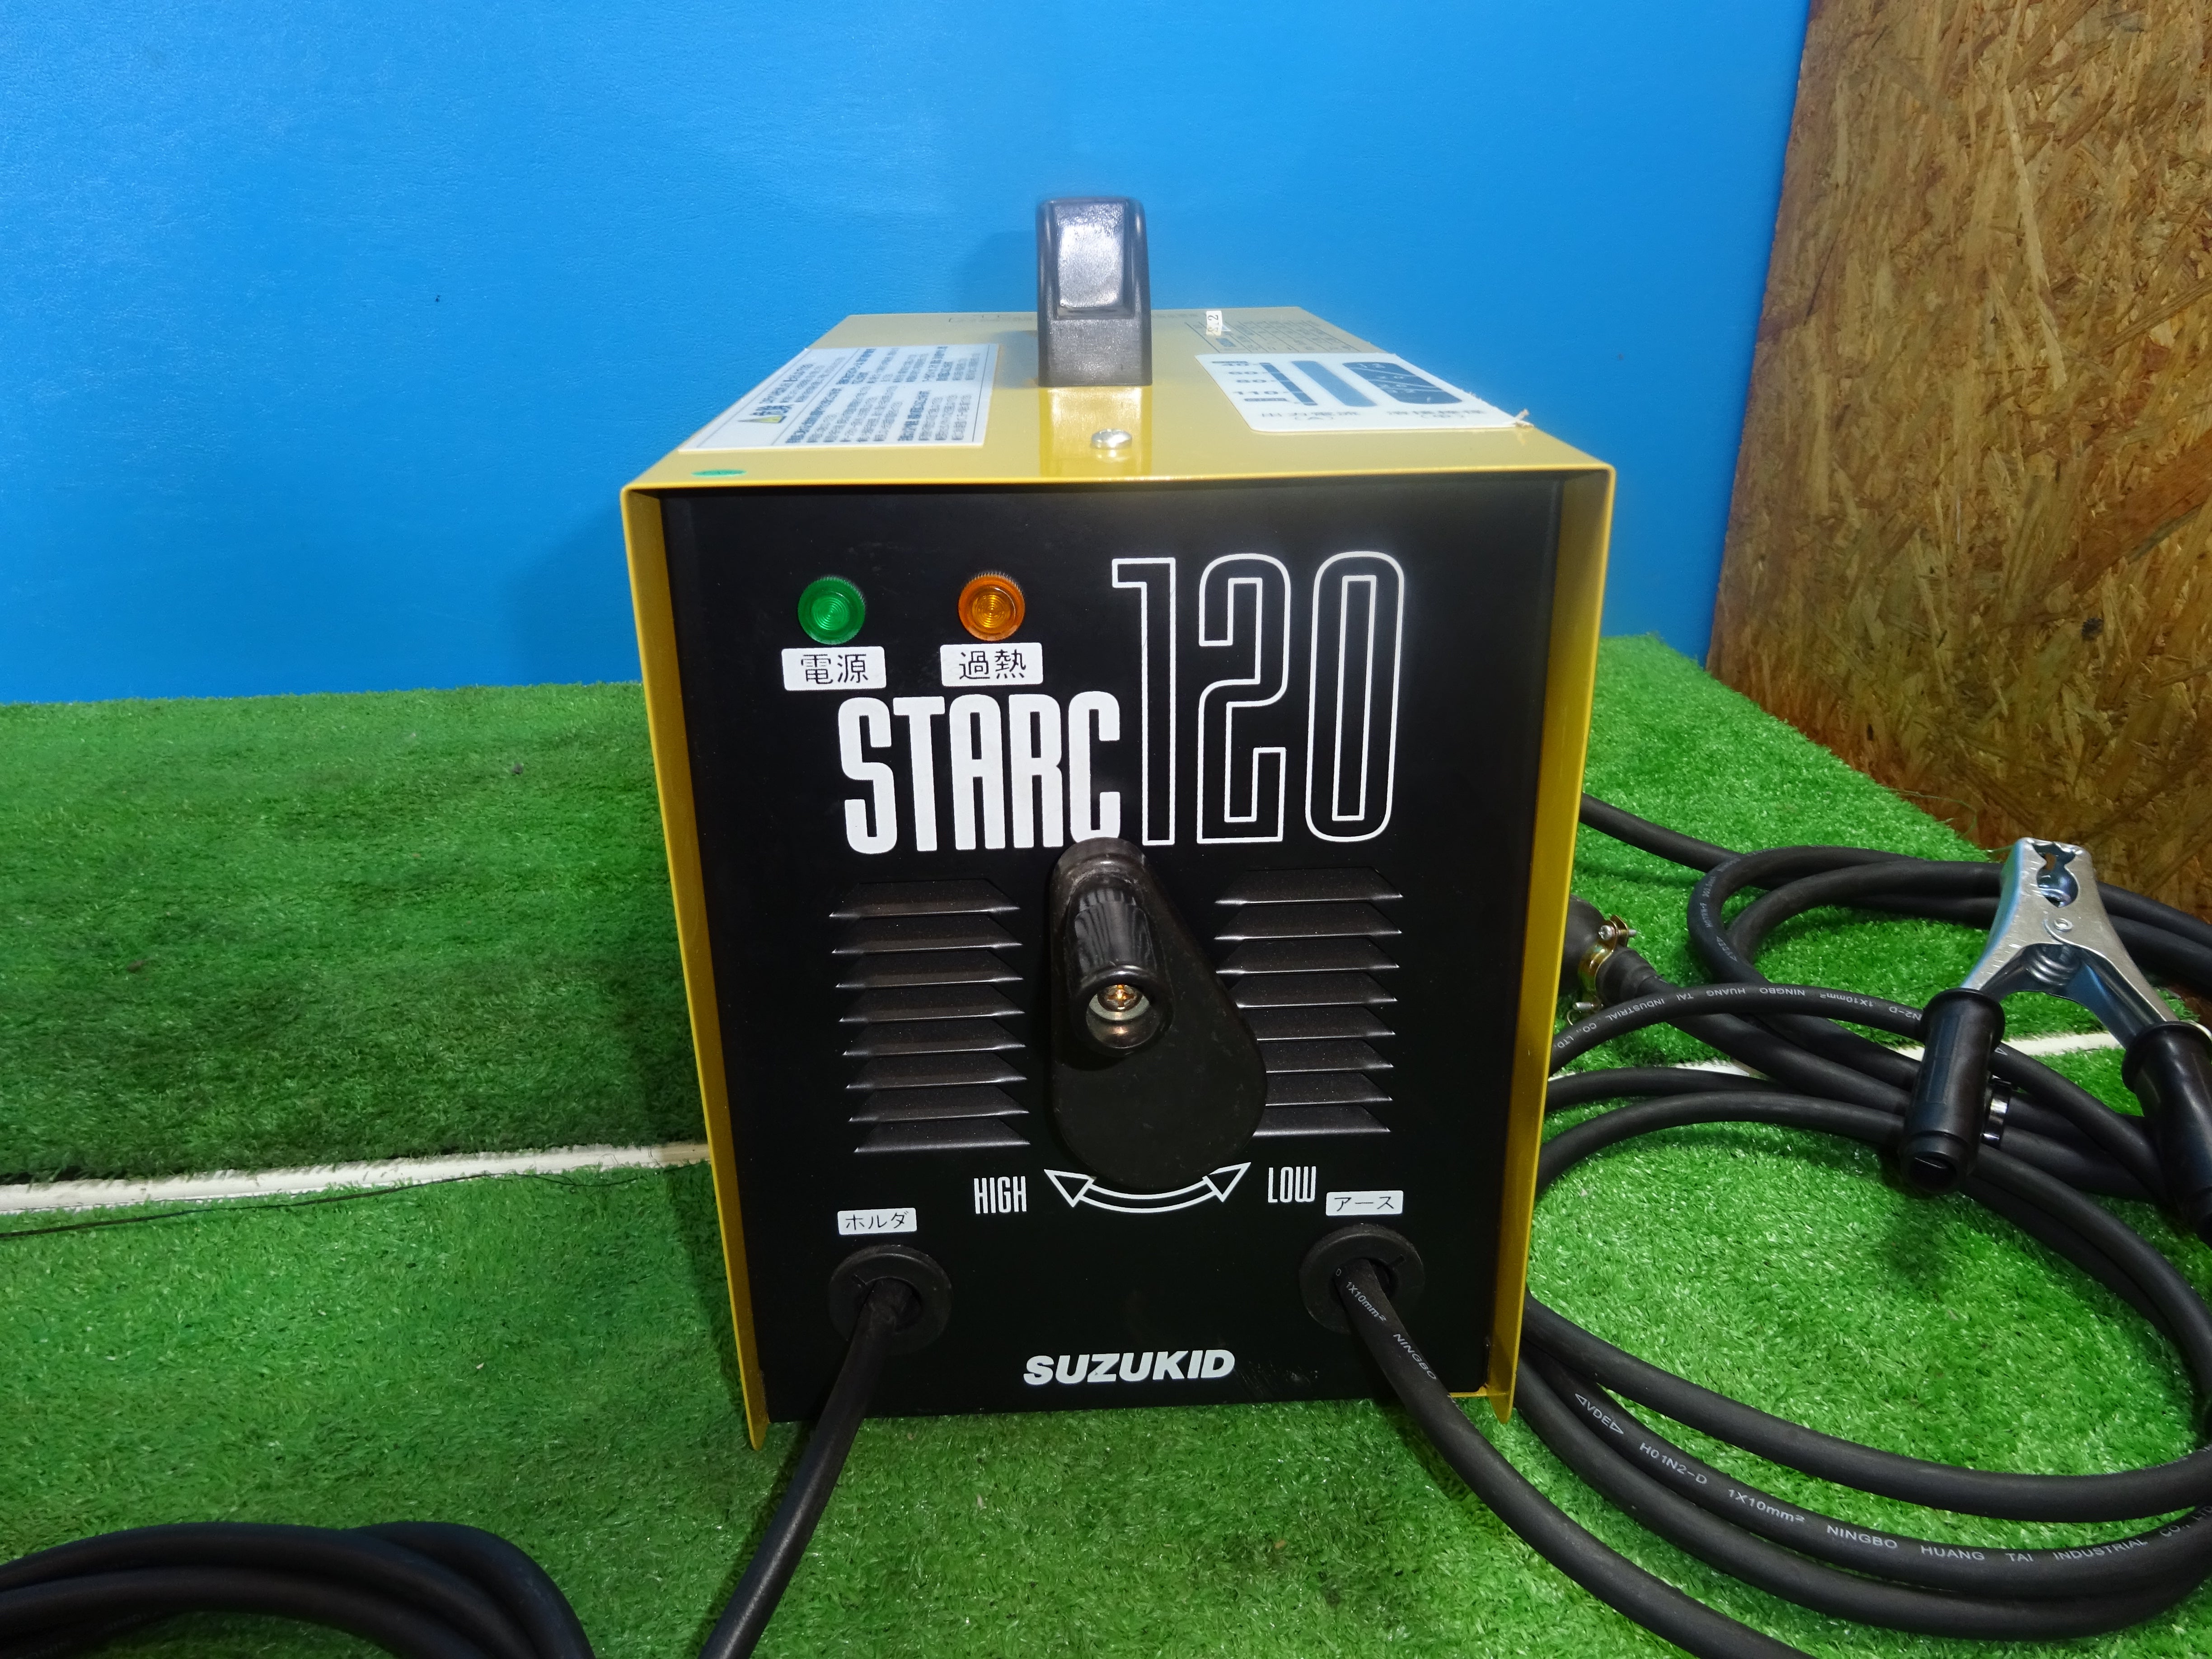 〇スズキッド(SUZUKID) 交流アーク溶接機 STARC120 スターク120 SSC